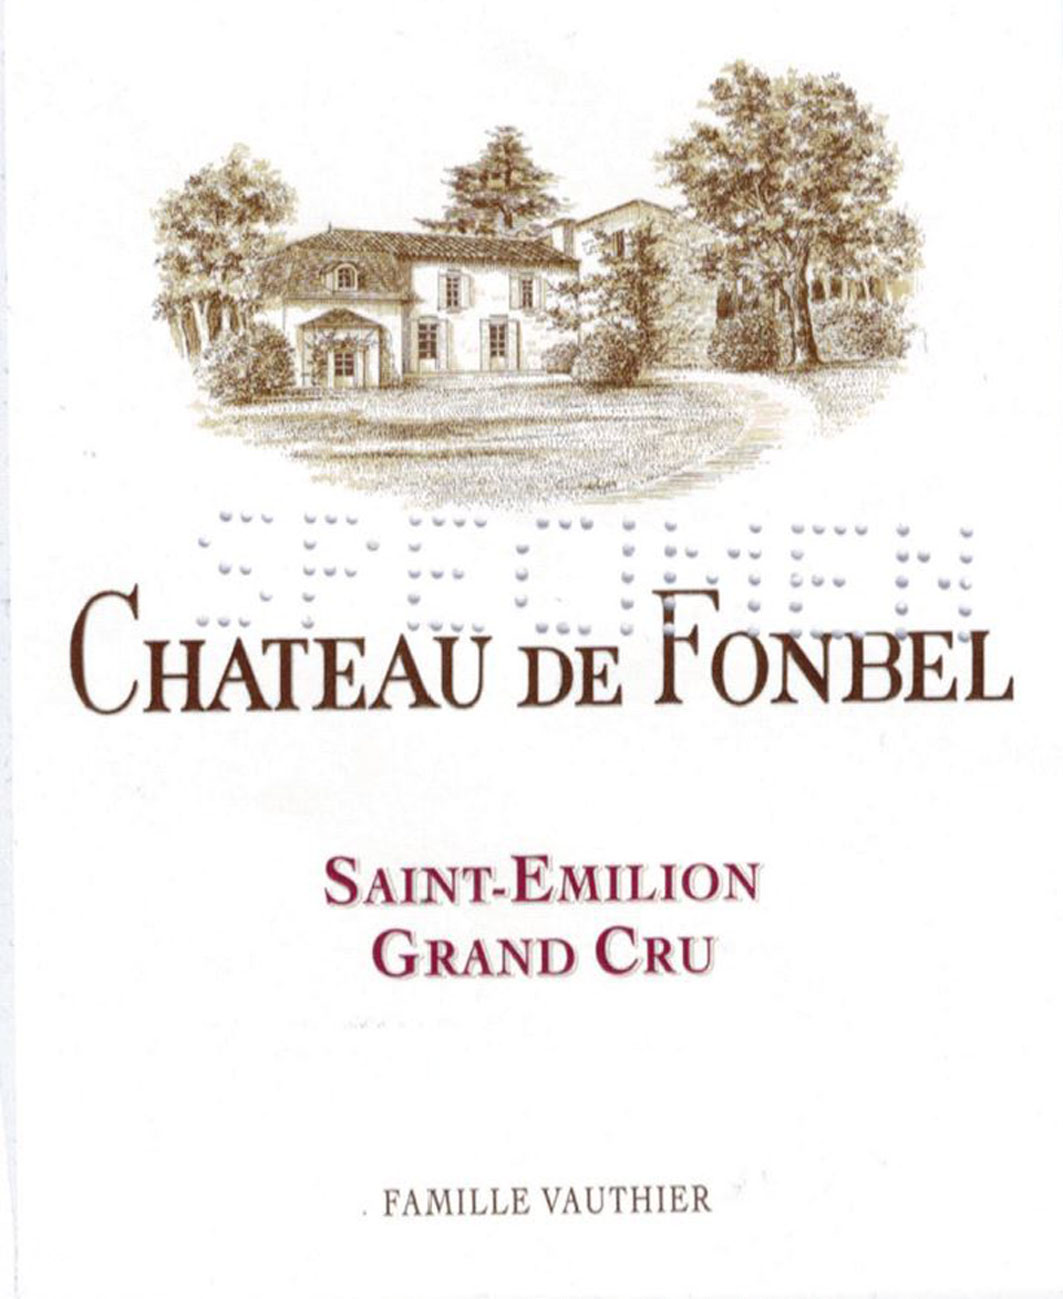 Chateau de Fonbel label